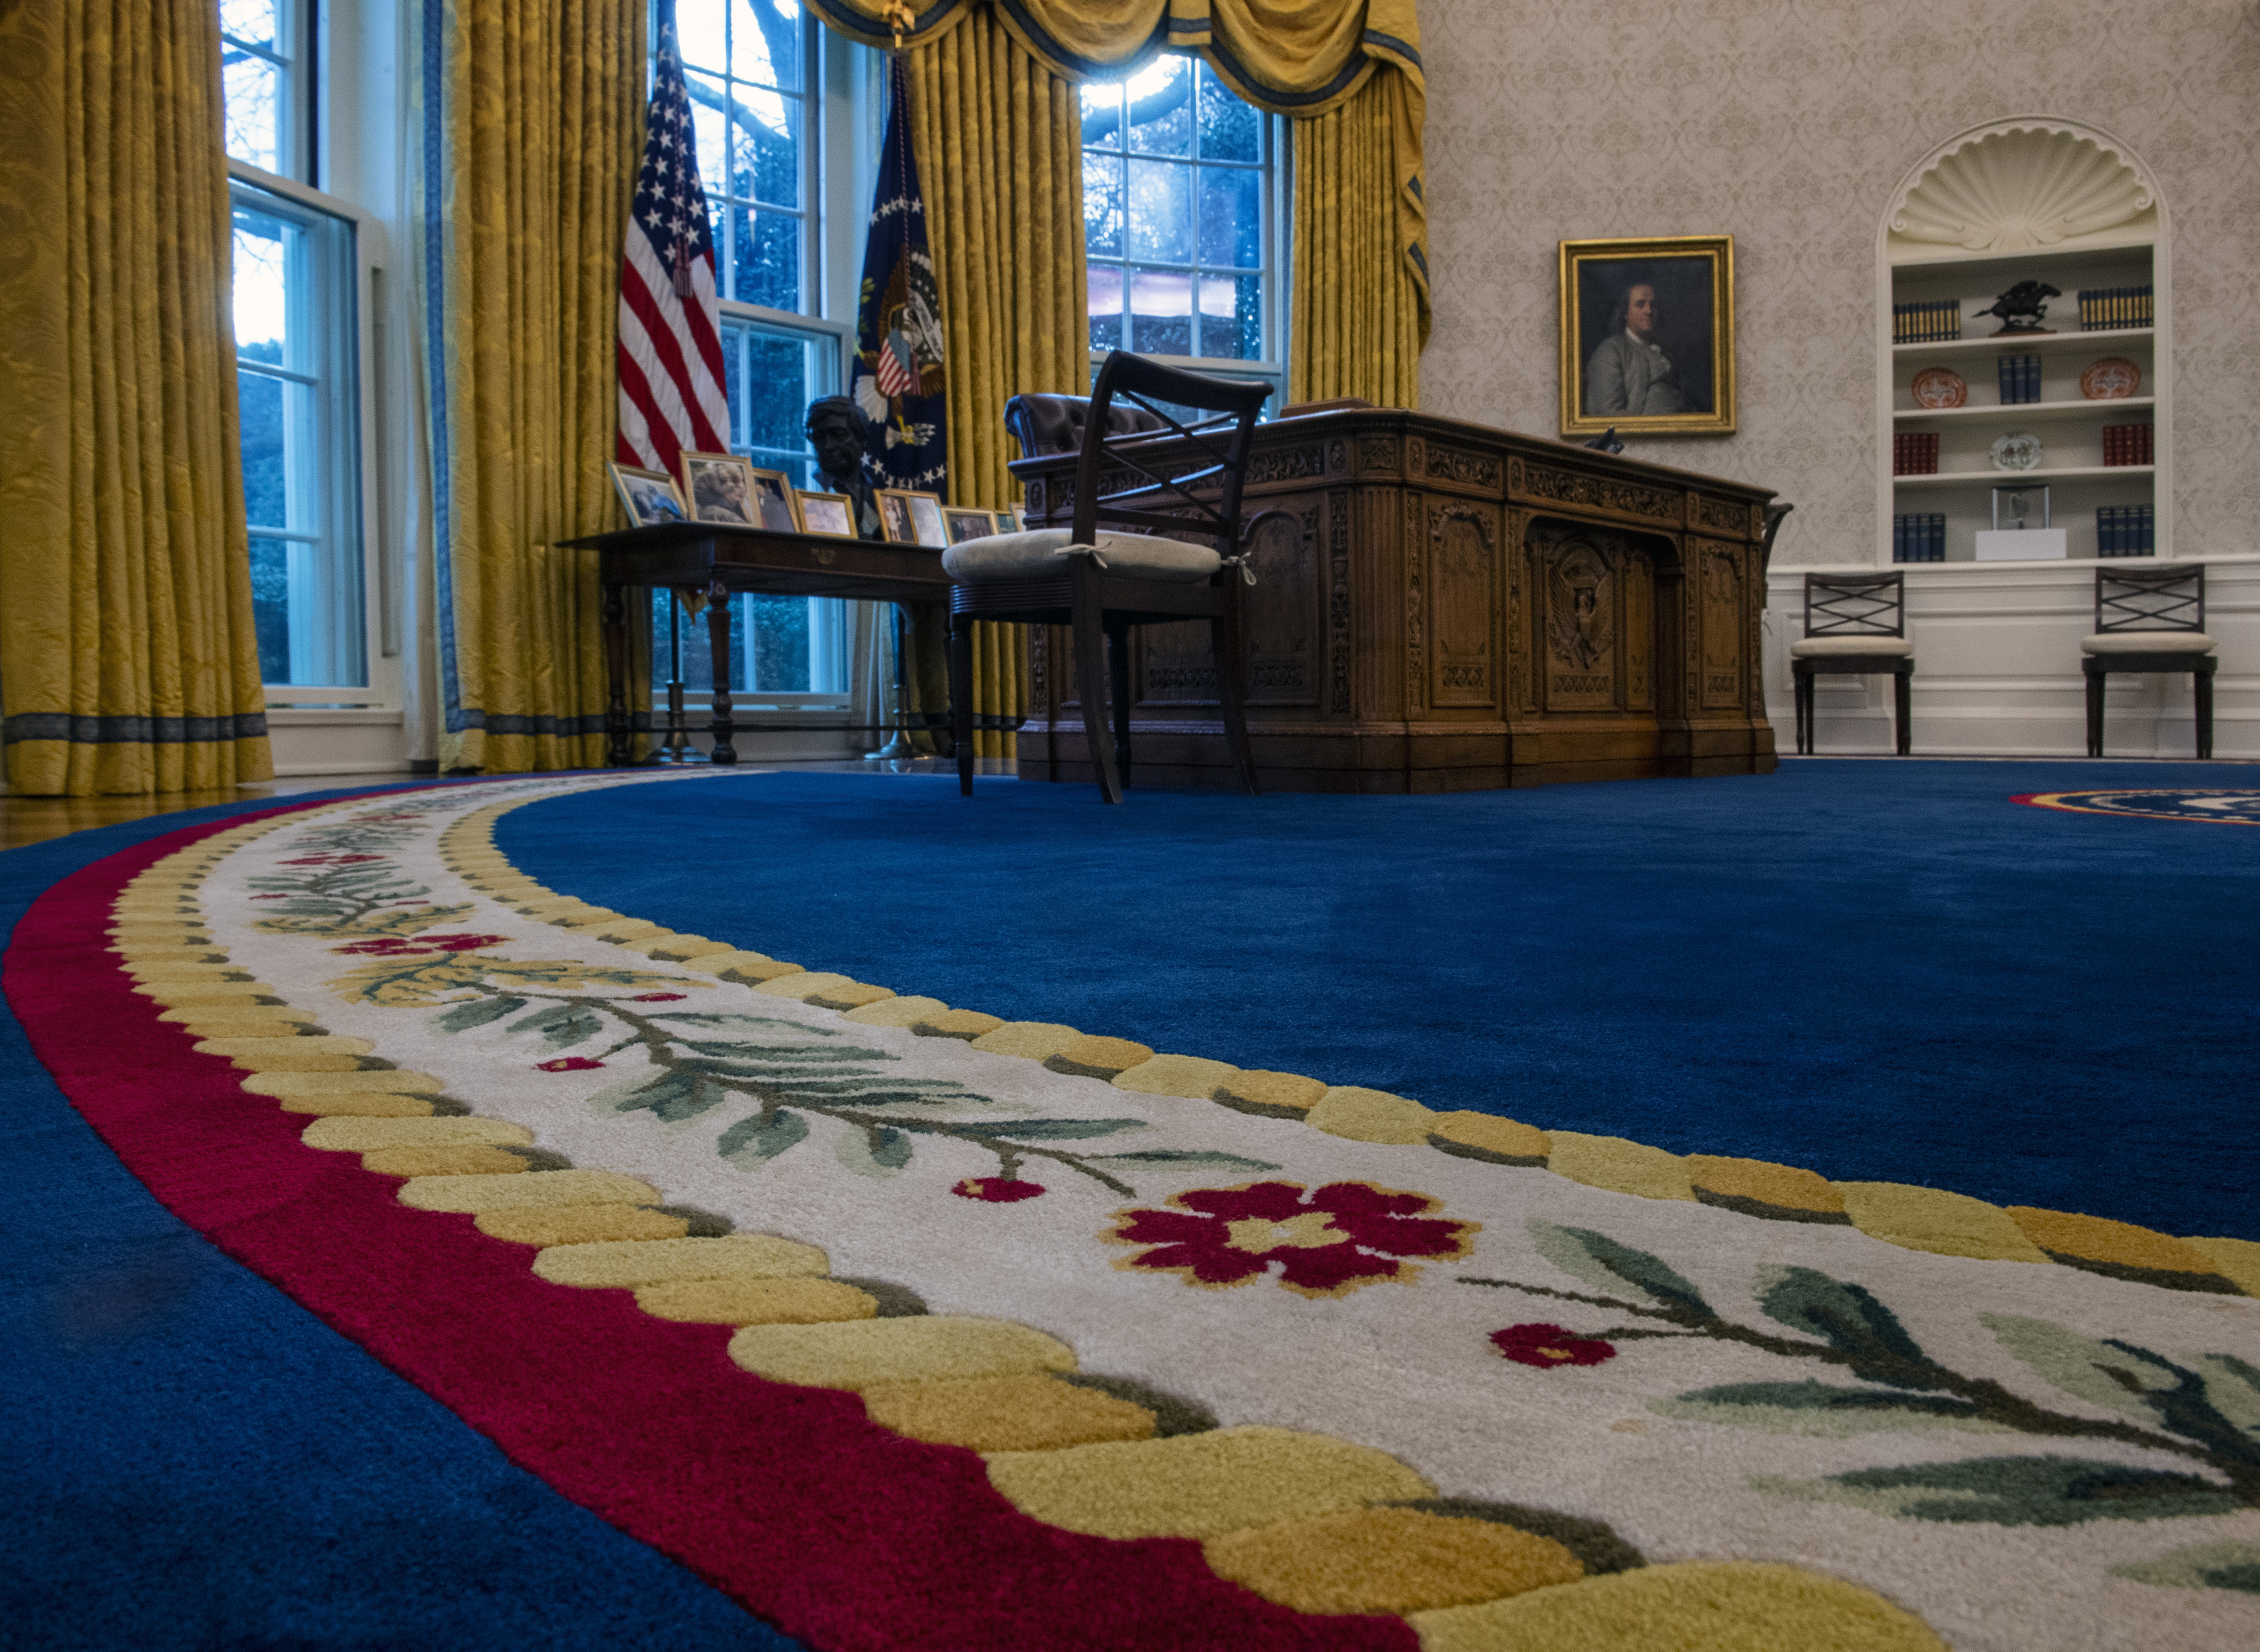 A look inside Biden's Oval Office